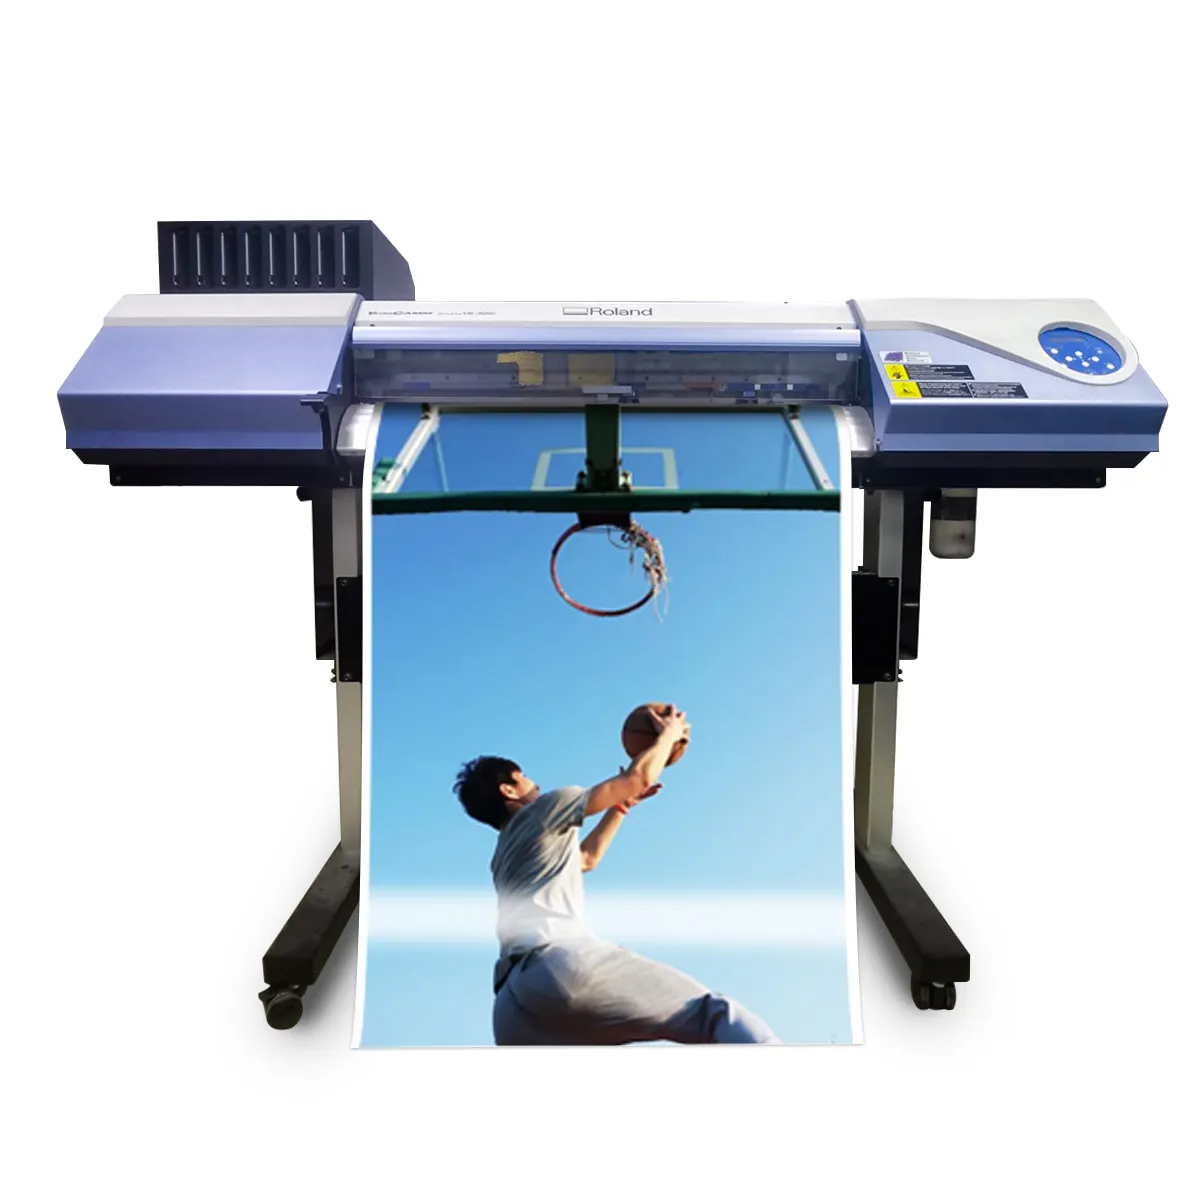 Orçamento-Friendly roland eco solvente impressora e cortador vs300i máquinas de fabricação para pequenas empresas